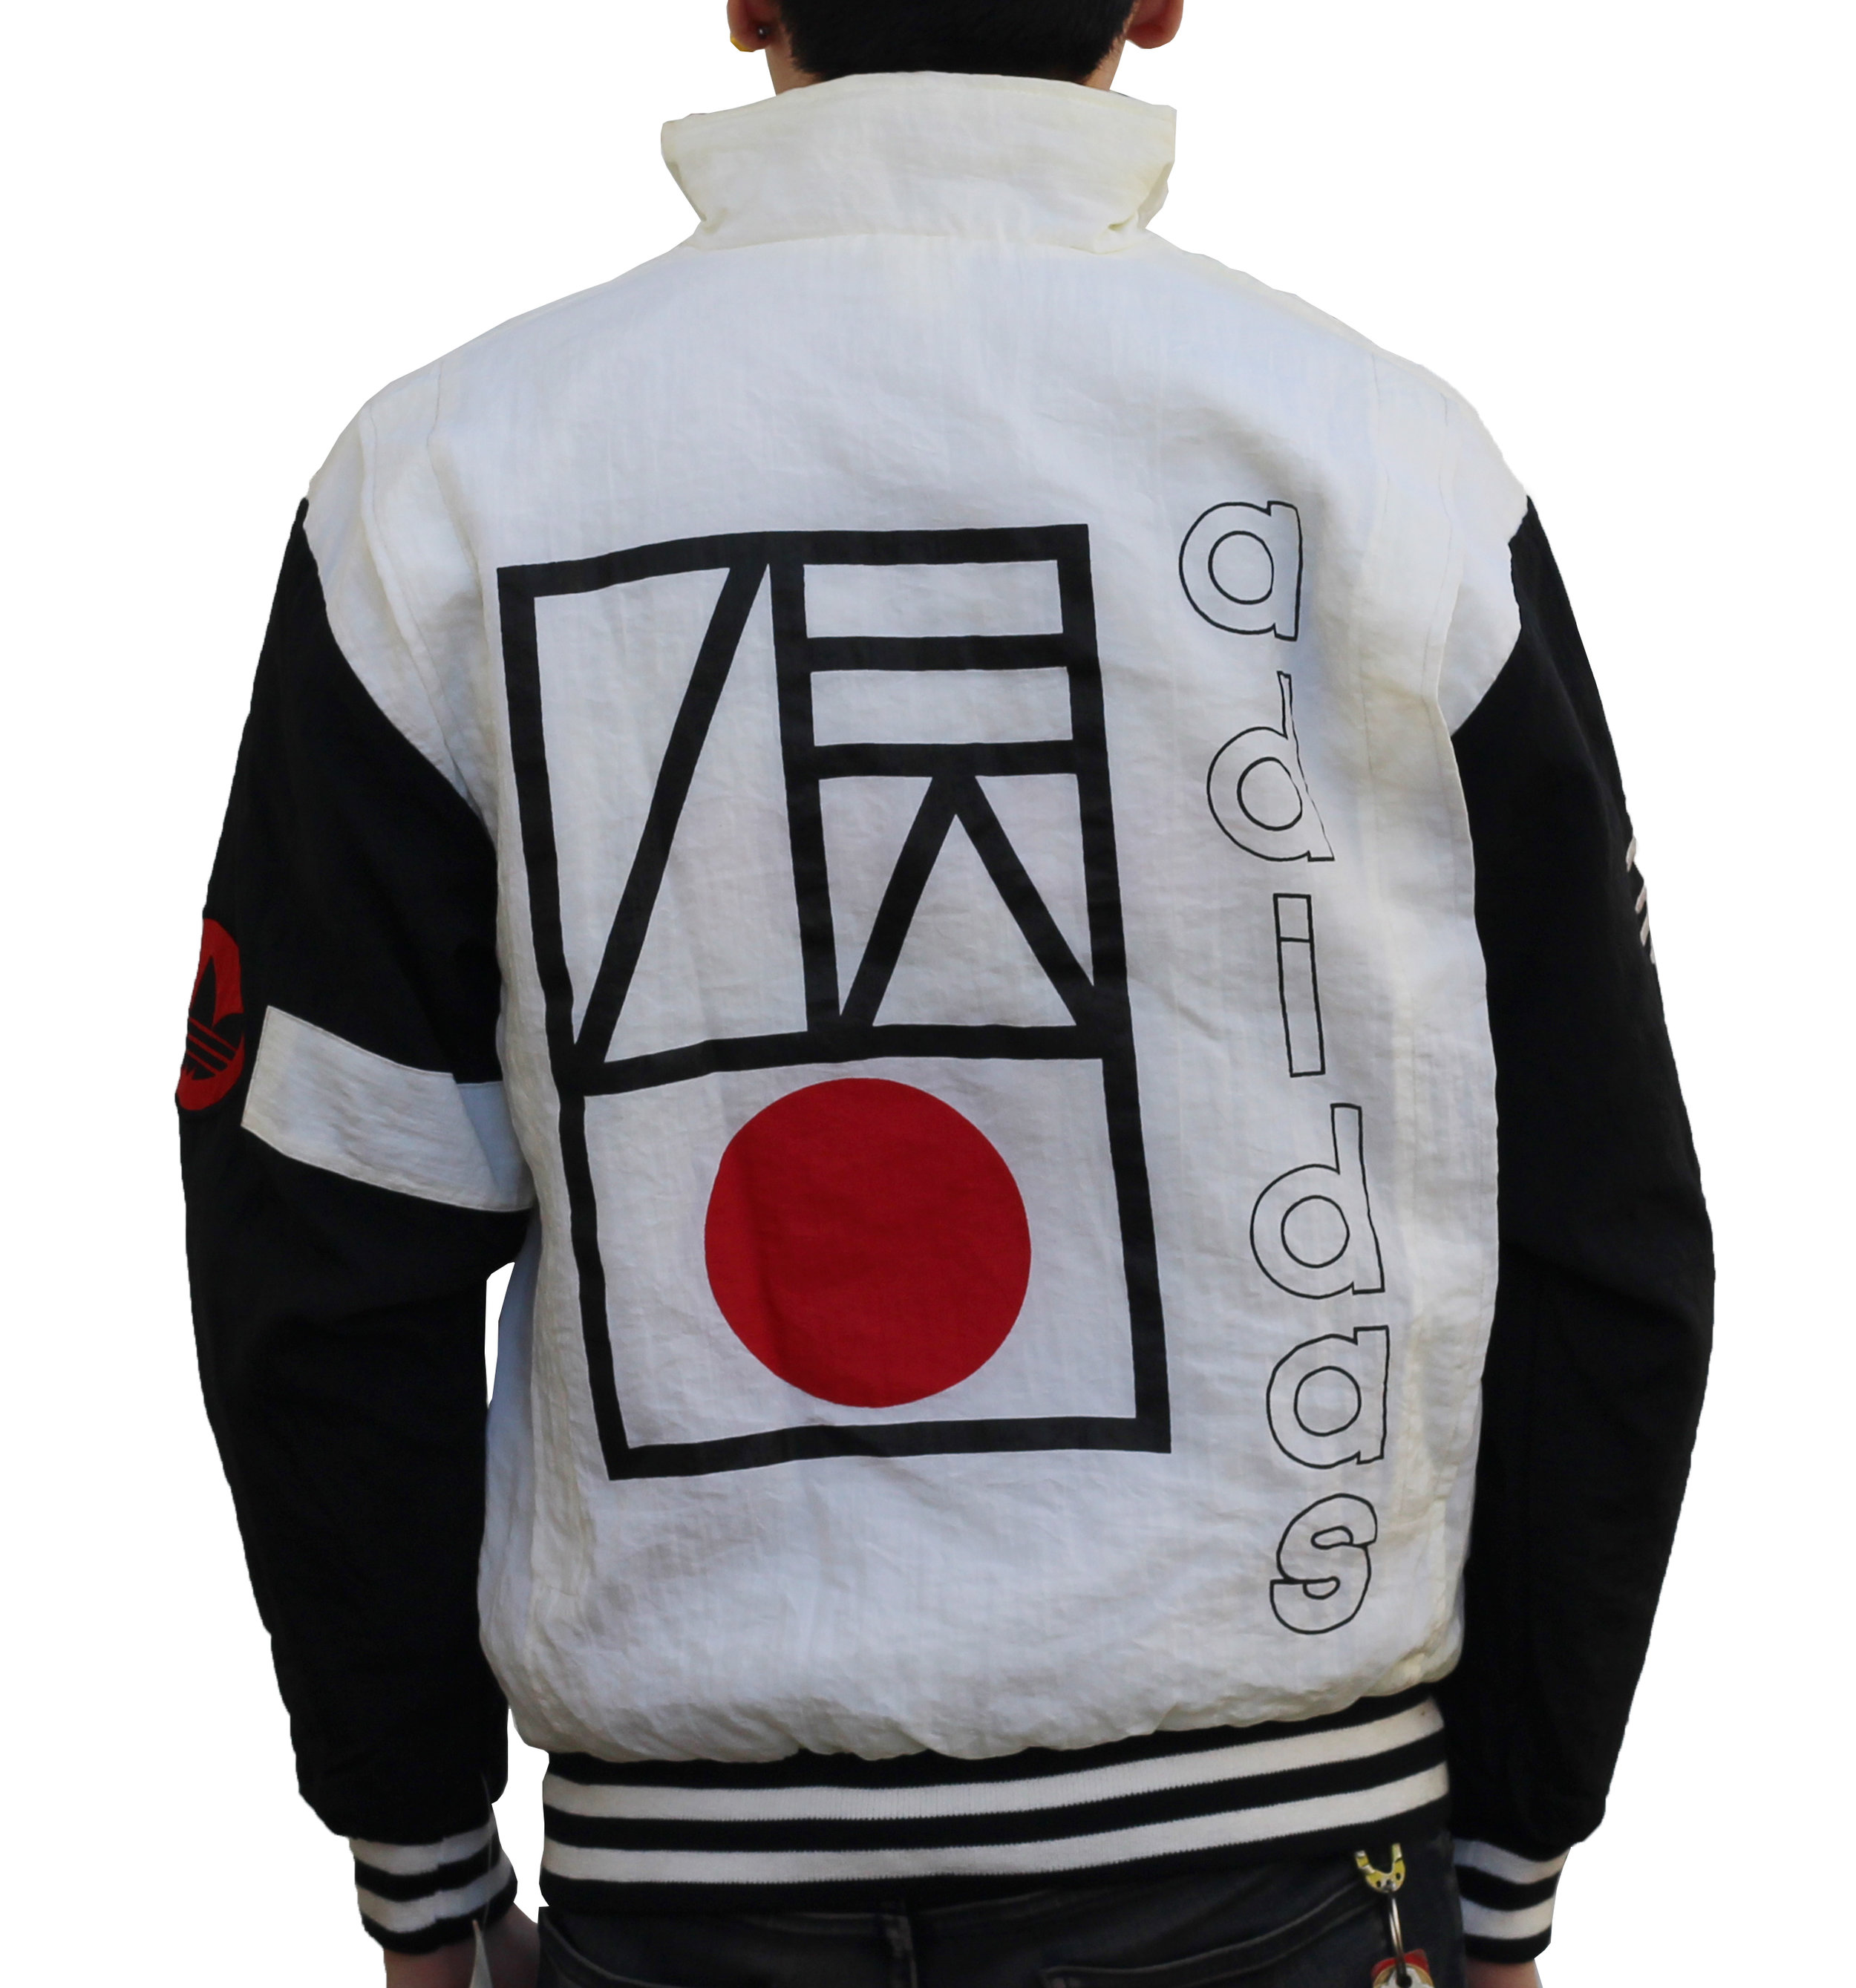 adidas jacket japanese writing